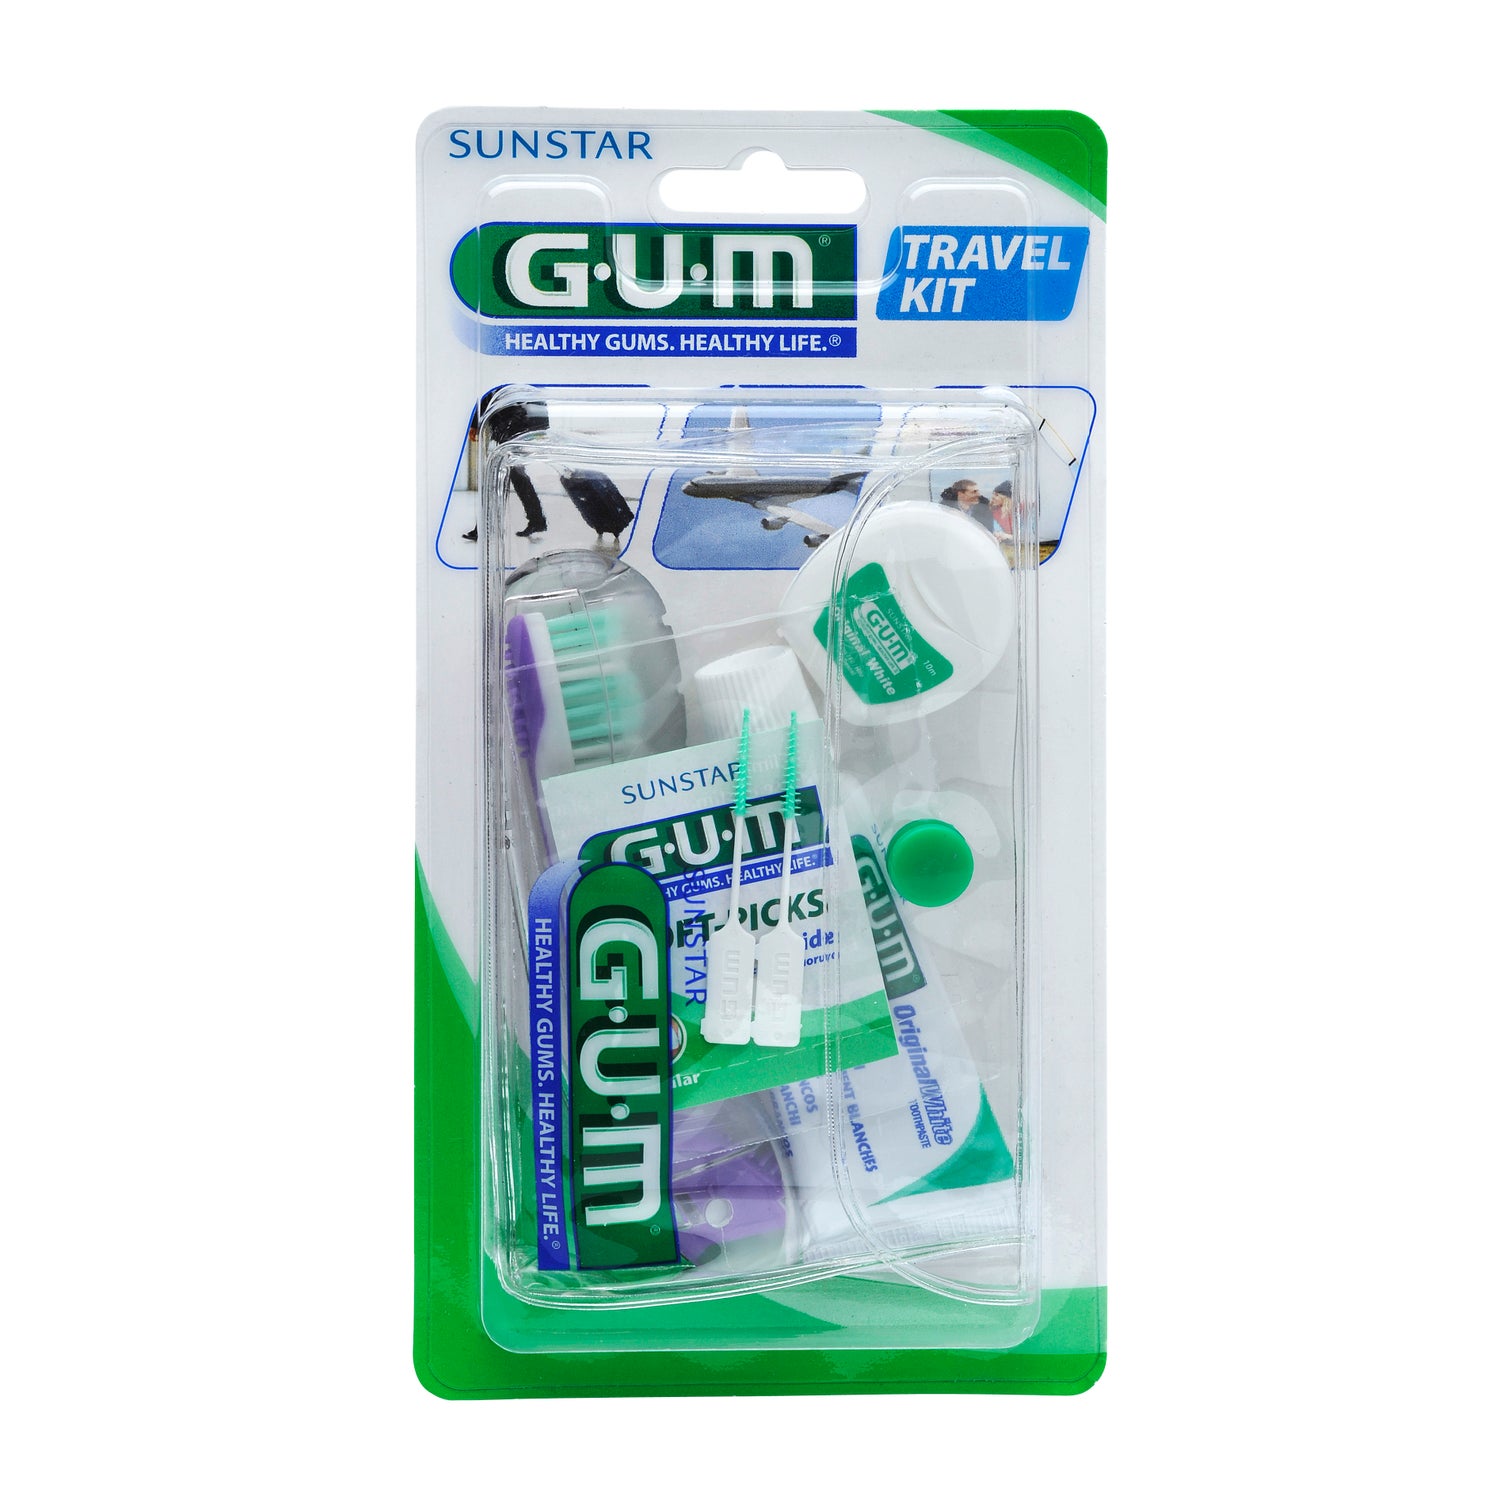 Gum Kit Viaje Cepillo Dental + Hilo Dental + Dentífrico